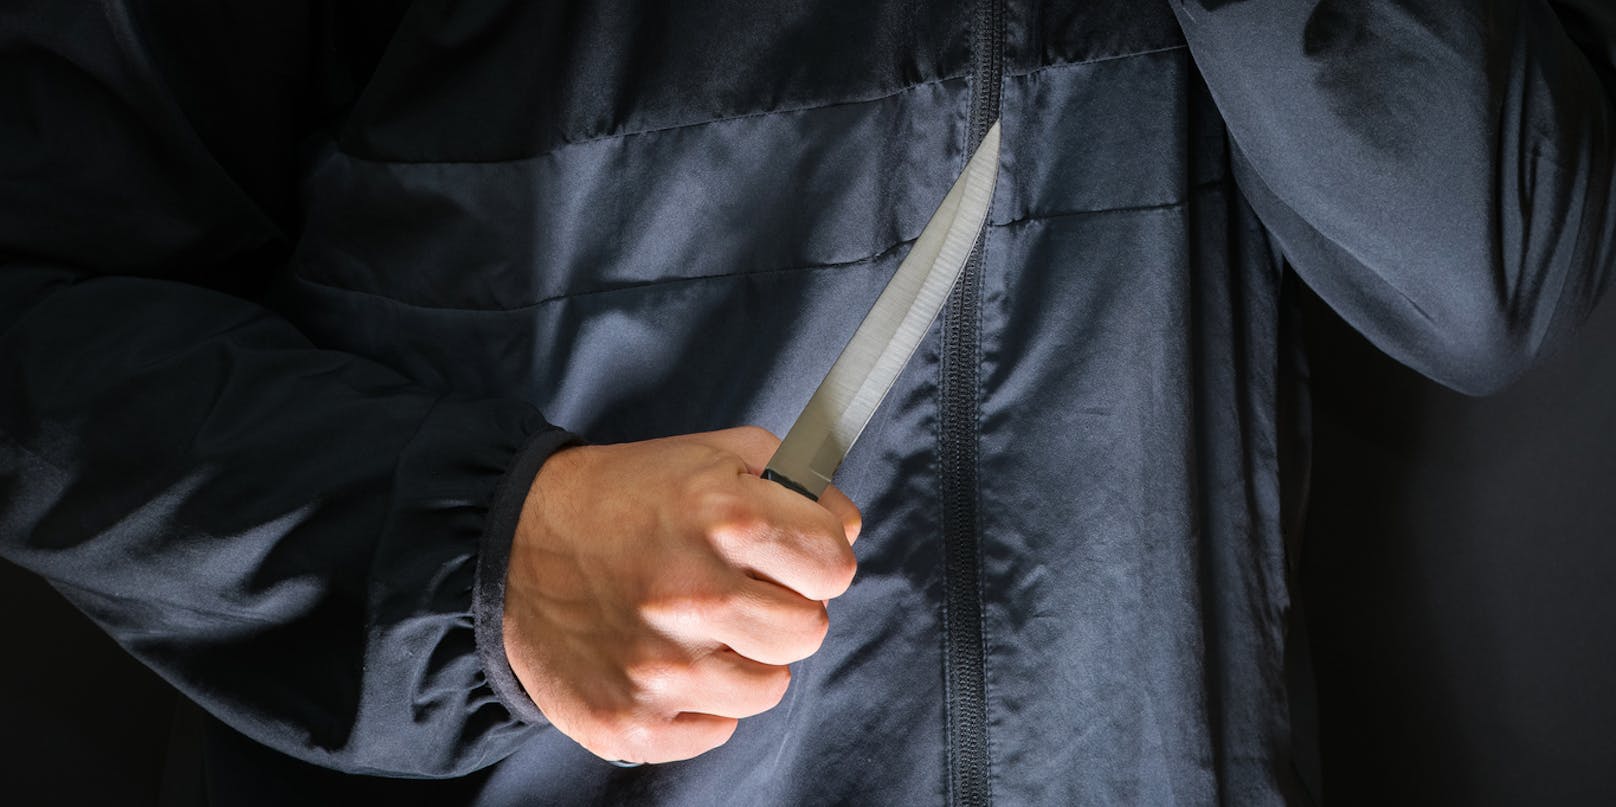 Der 55-Jährige soll seine Frau mit dem Messer bedroht haben. (Symbolfoto)